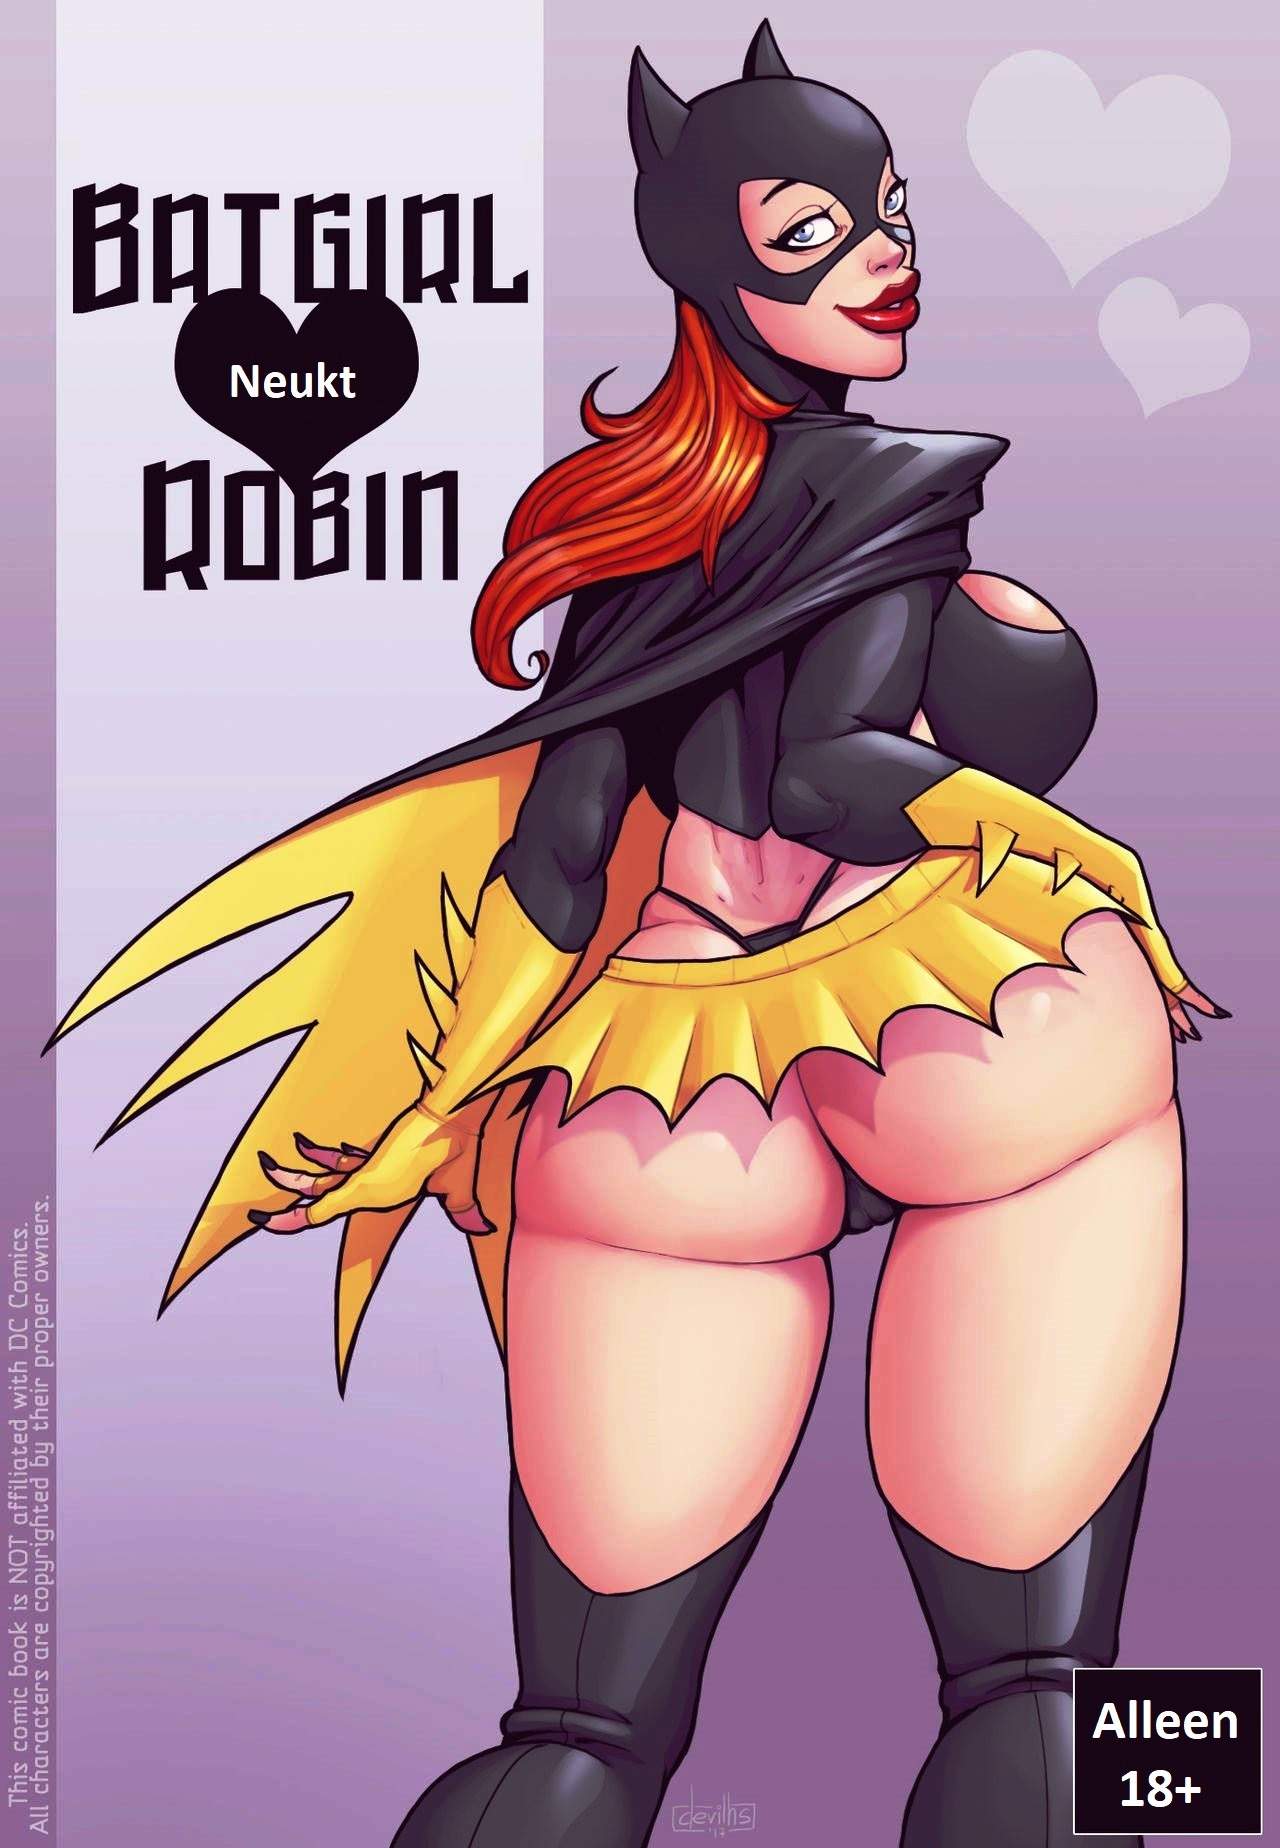 SureFap xxx porno Batman - [DevilHS] - Ruined Gotham - Batgirl Loves Robin  [25 color + 6 cut pages]